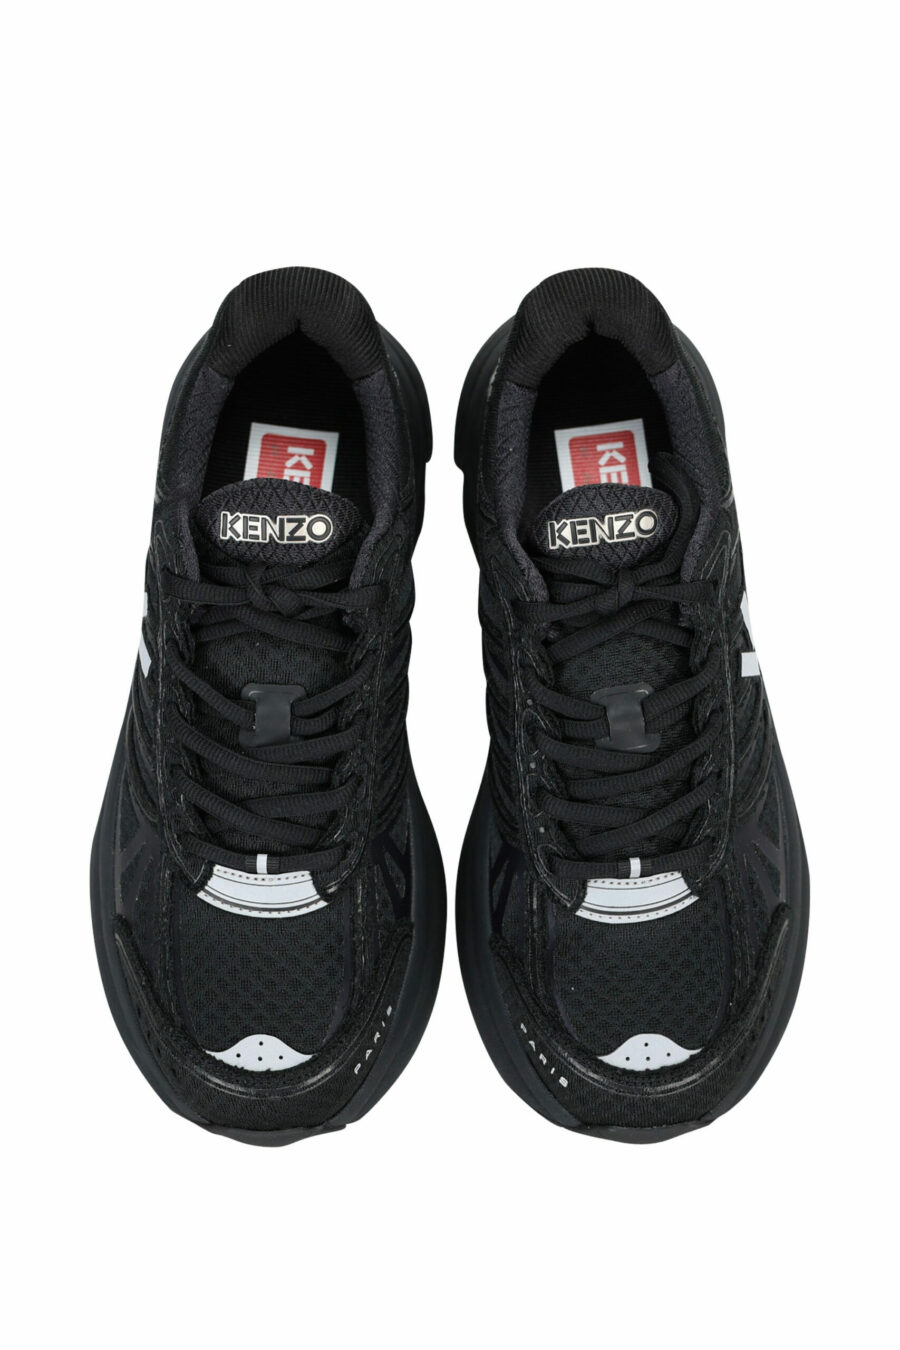 Zapatillas negras "kenzo tech runner" con minilogo blanco - 3612230549722 4 scaled